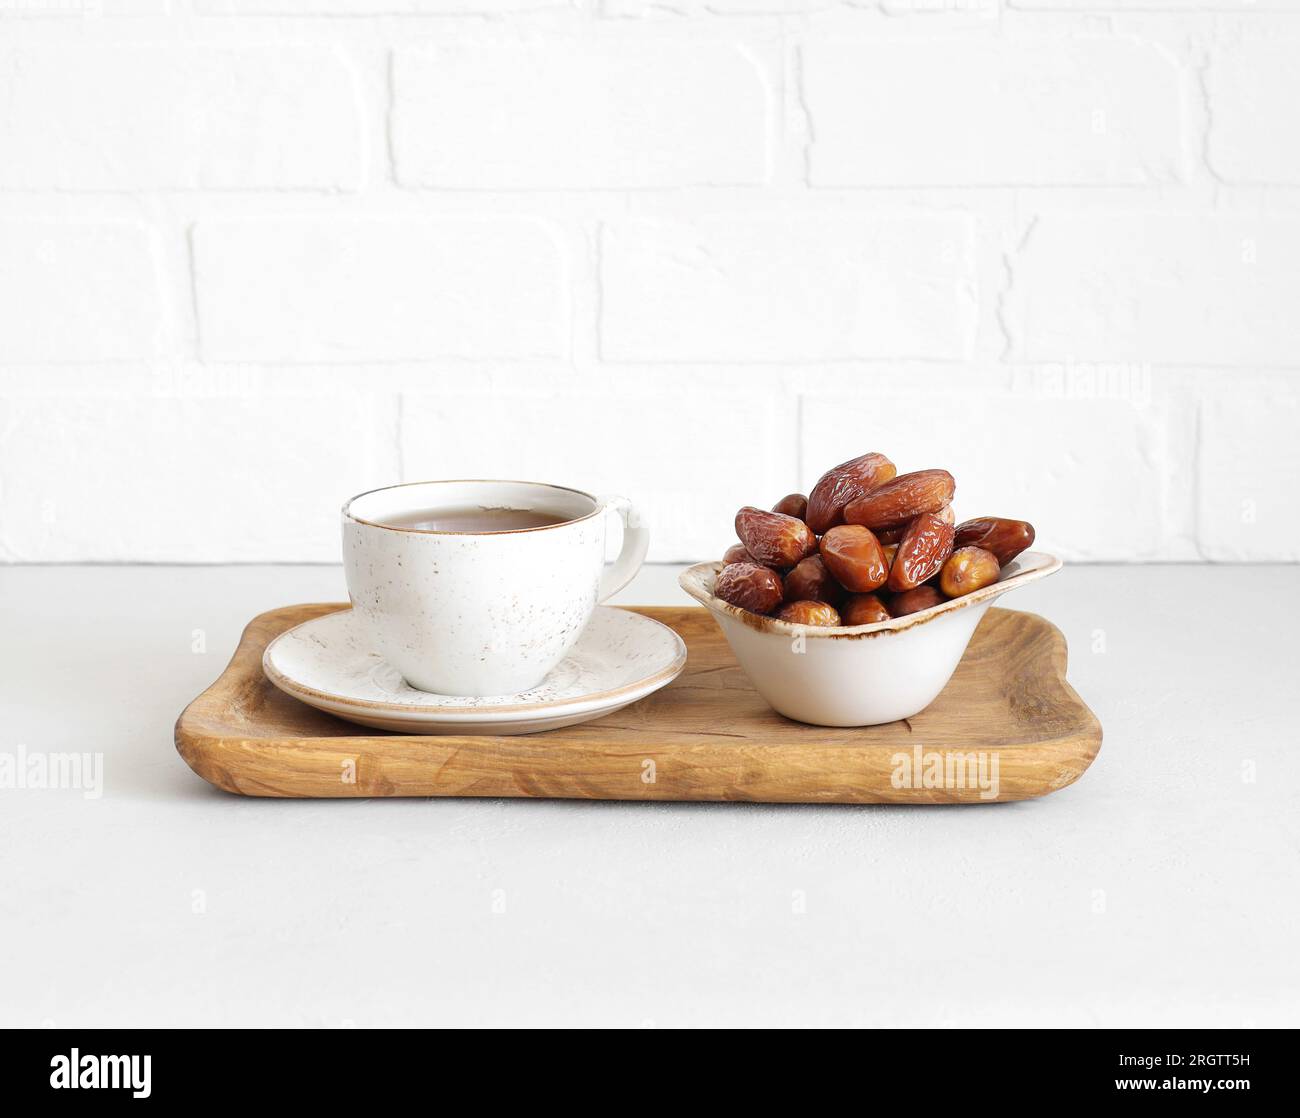 Datteri essiccati in una ciotola e una bevanda da tè in un vassoio di legno su sfondo bianco. Cibo popolare per il Ramadan. Dolci orientali. Foto Stock